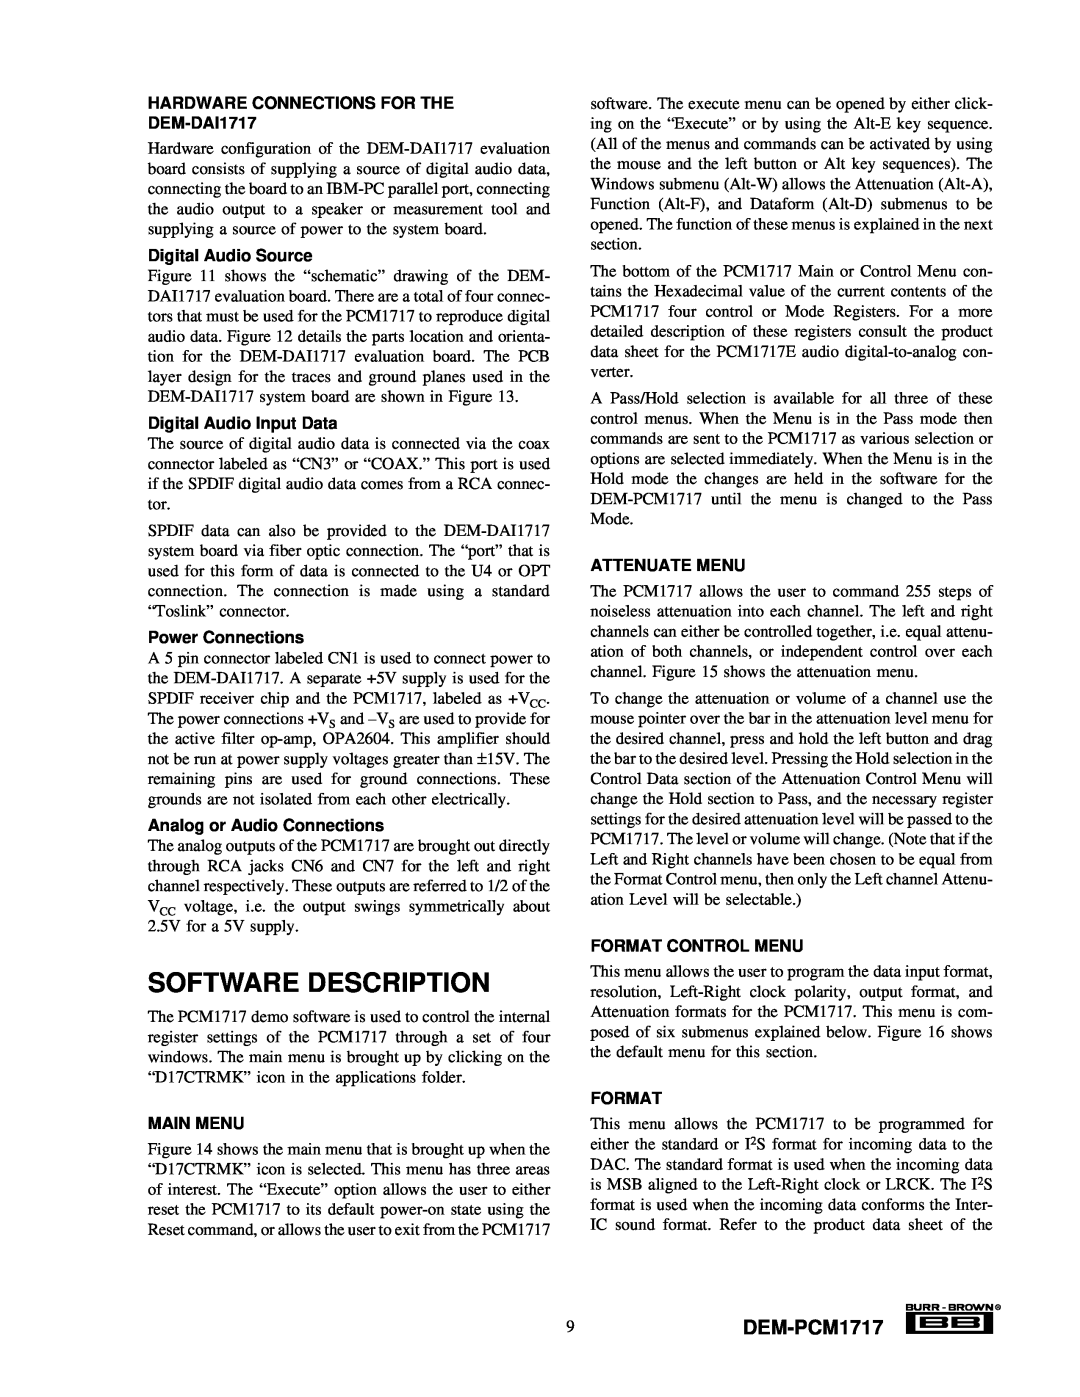 Texas Instruments Software Description, 9DEM-PCM1717, HARDWARE CONNECTIONS FOR THE DEM-DAI1717, Digital Audio Source 